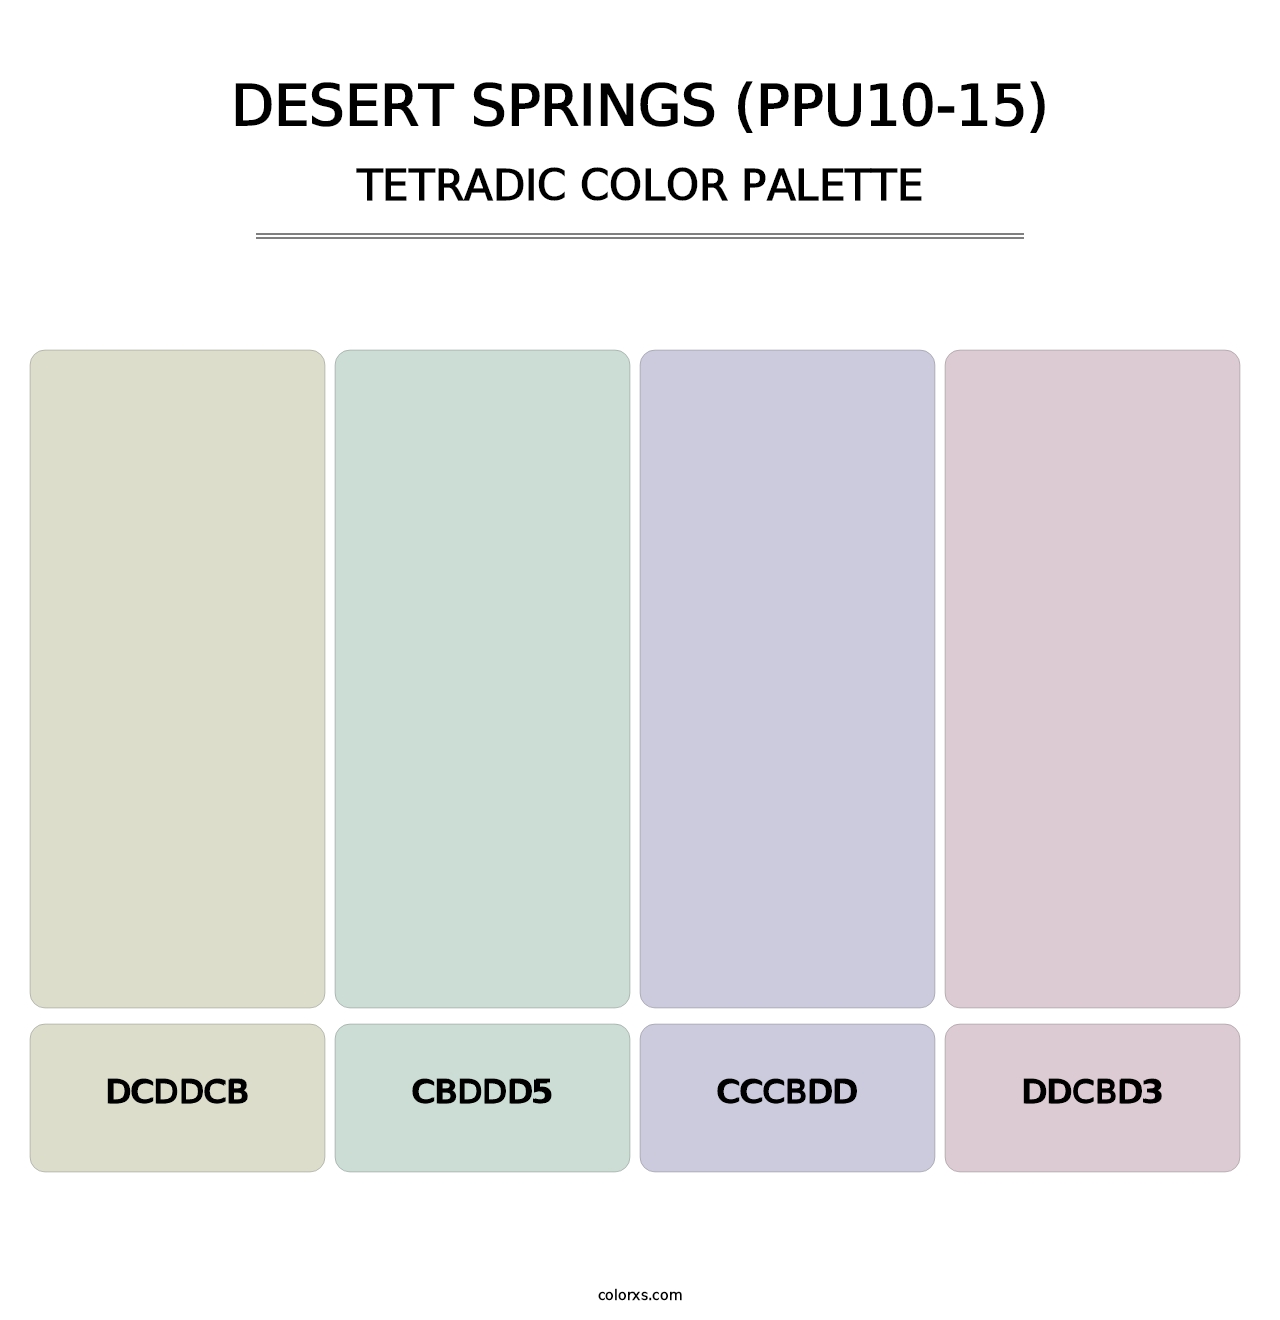 Desert Springs (PPU10-15) - Tetradic Color Palette